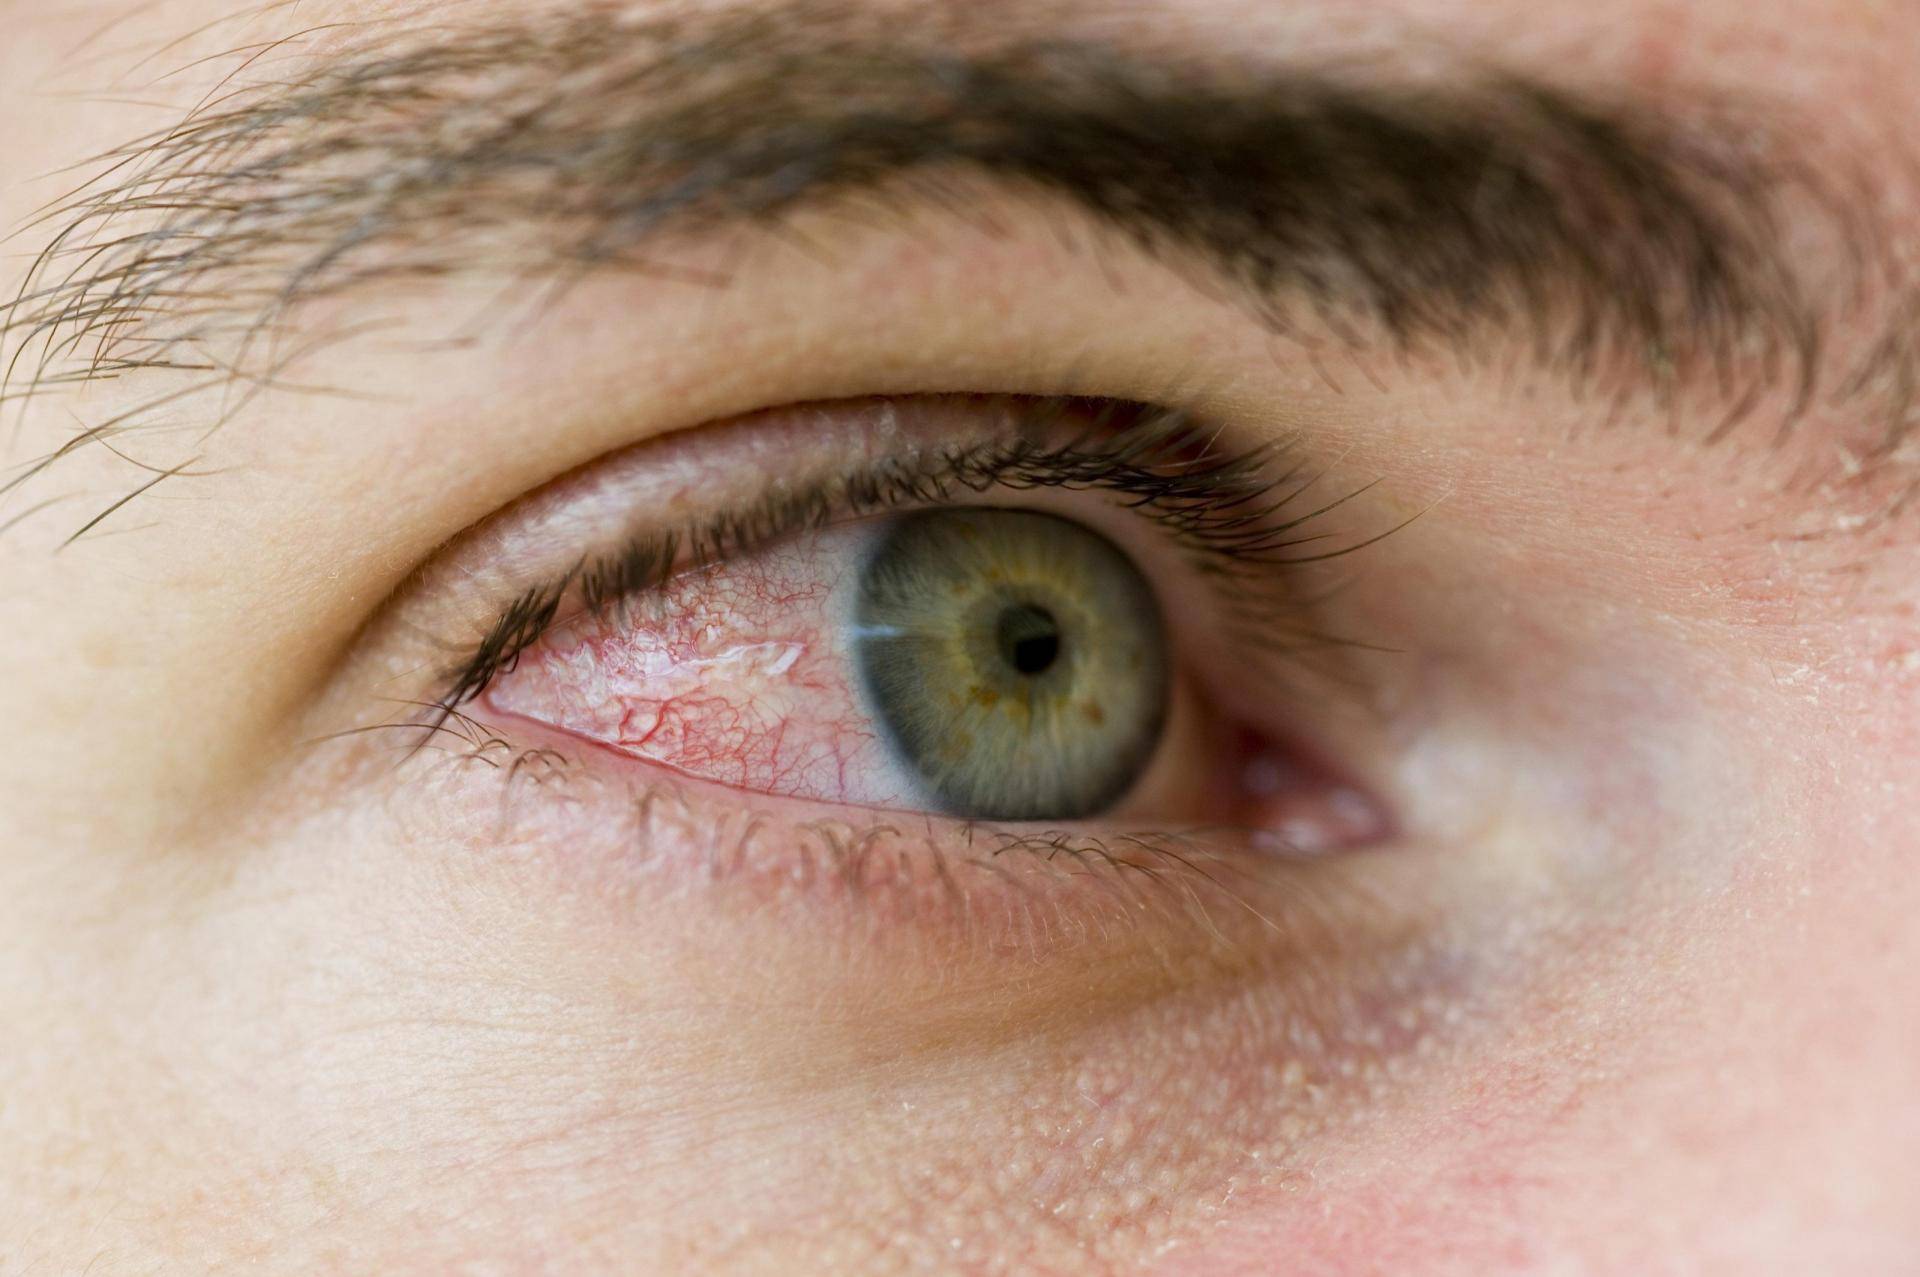 Распространенные инфекции глаз: вирусные, бактериальные, грибковые